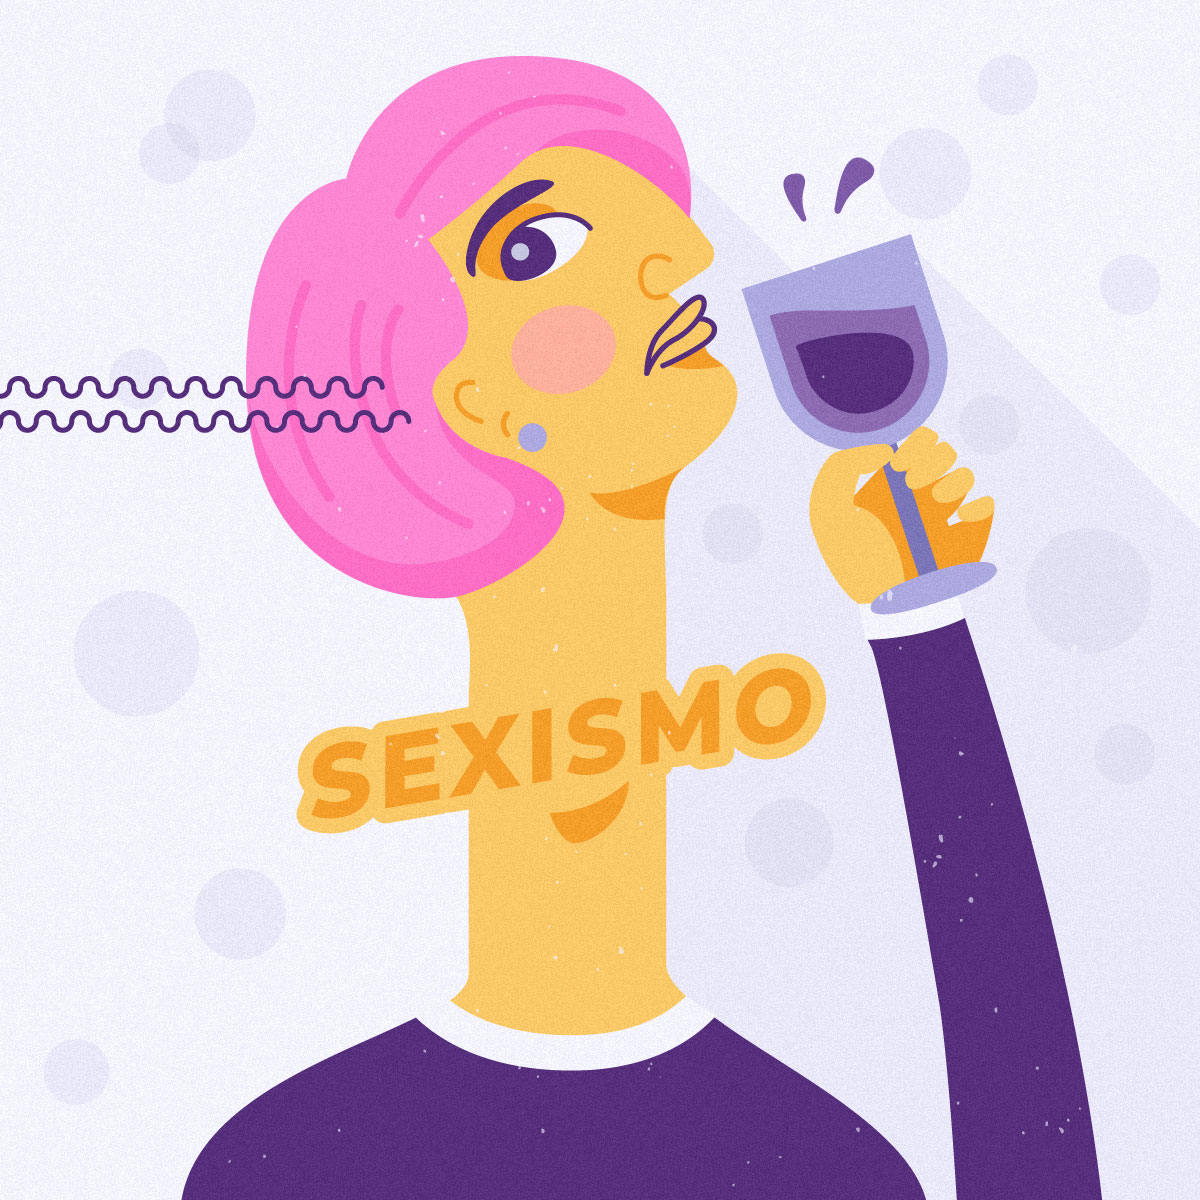 Ilustración donde una mujer tiene la palabra "sexismo" en el cuello, como si estuviera atorada con ella. A su vez se encuentra mirando para un costado mientras toma vino